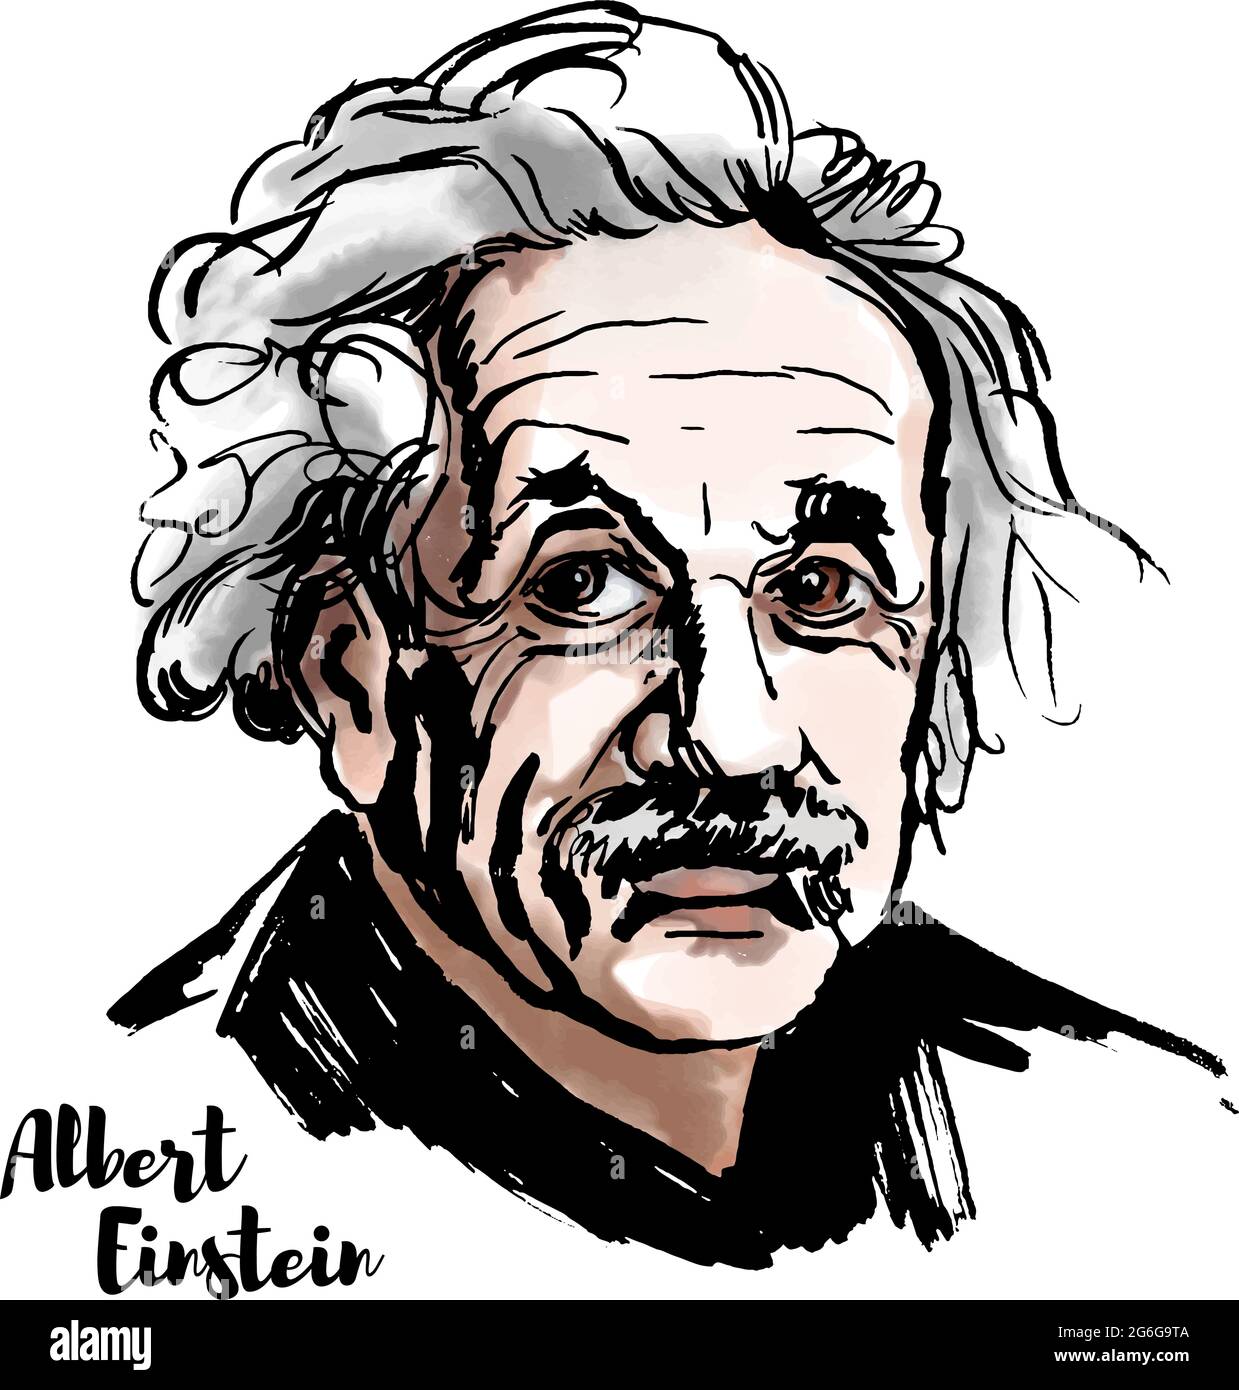 MOSCOU, RUSSIE - 20 MARS 2018 : portrait vectoriel aquarelle d'Albert Einstein avec contours d'encre. Le physicien théorique qui a développé la théorie de r Illustration de Vecteur